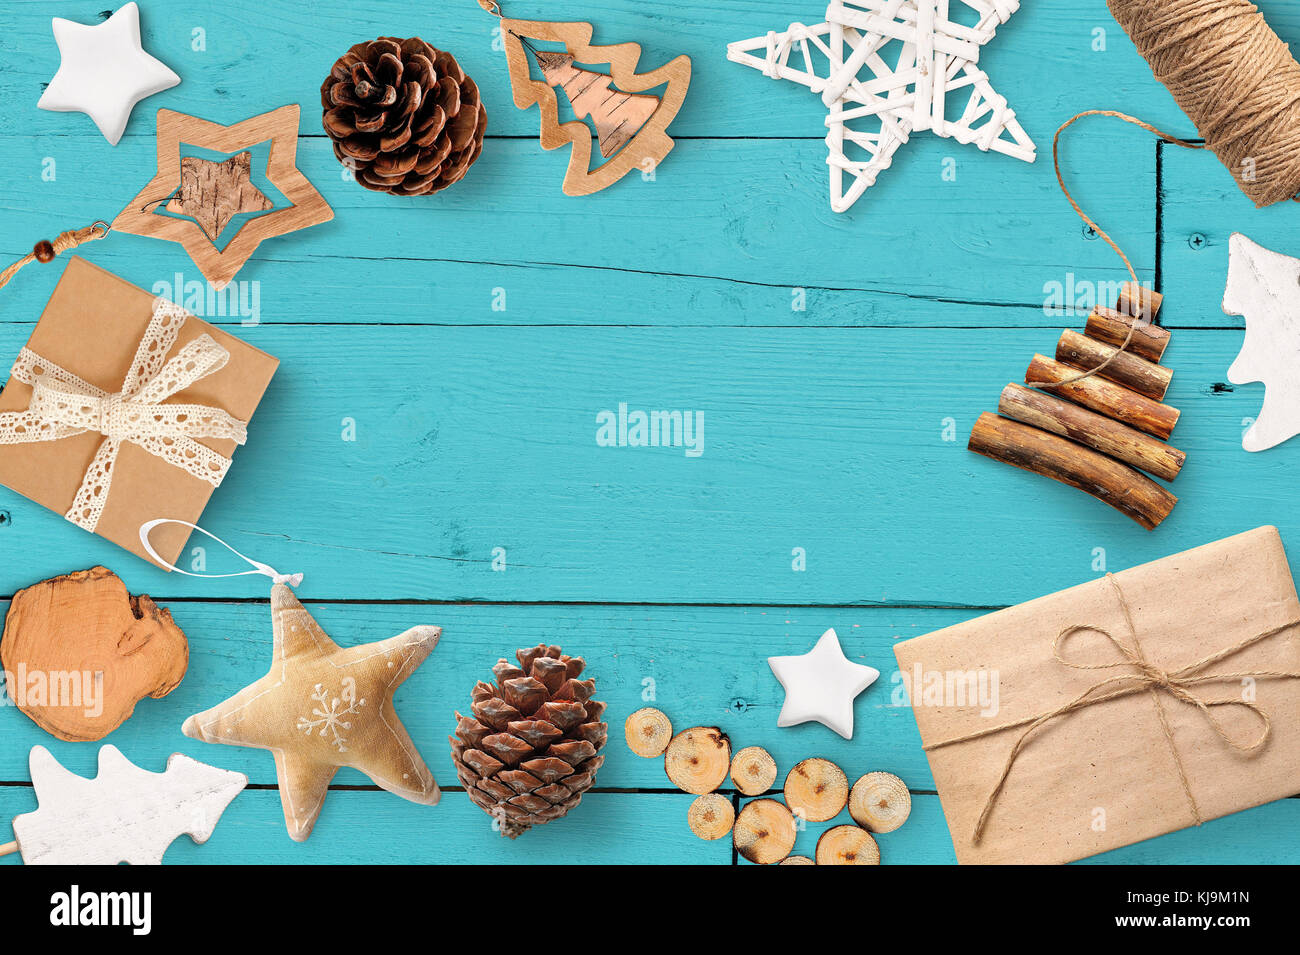 Weihnachten mock up mit Platz für Ihren Text und weiße Weihnachten Baum und Stern Geschenk, Kegel auf einem türkis Holz- Hintergrund. Flach, Ansicht von oben Foto mockup Stockfoto